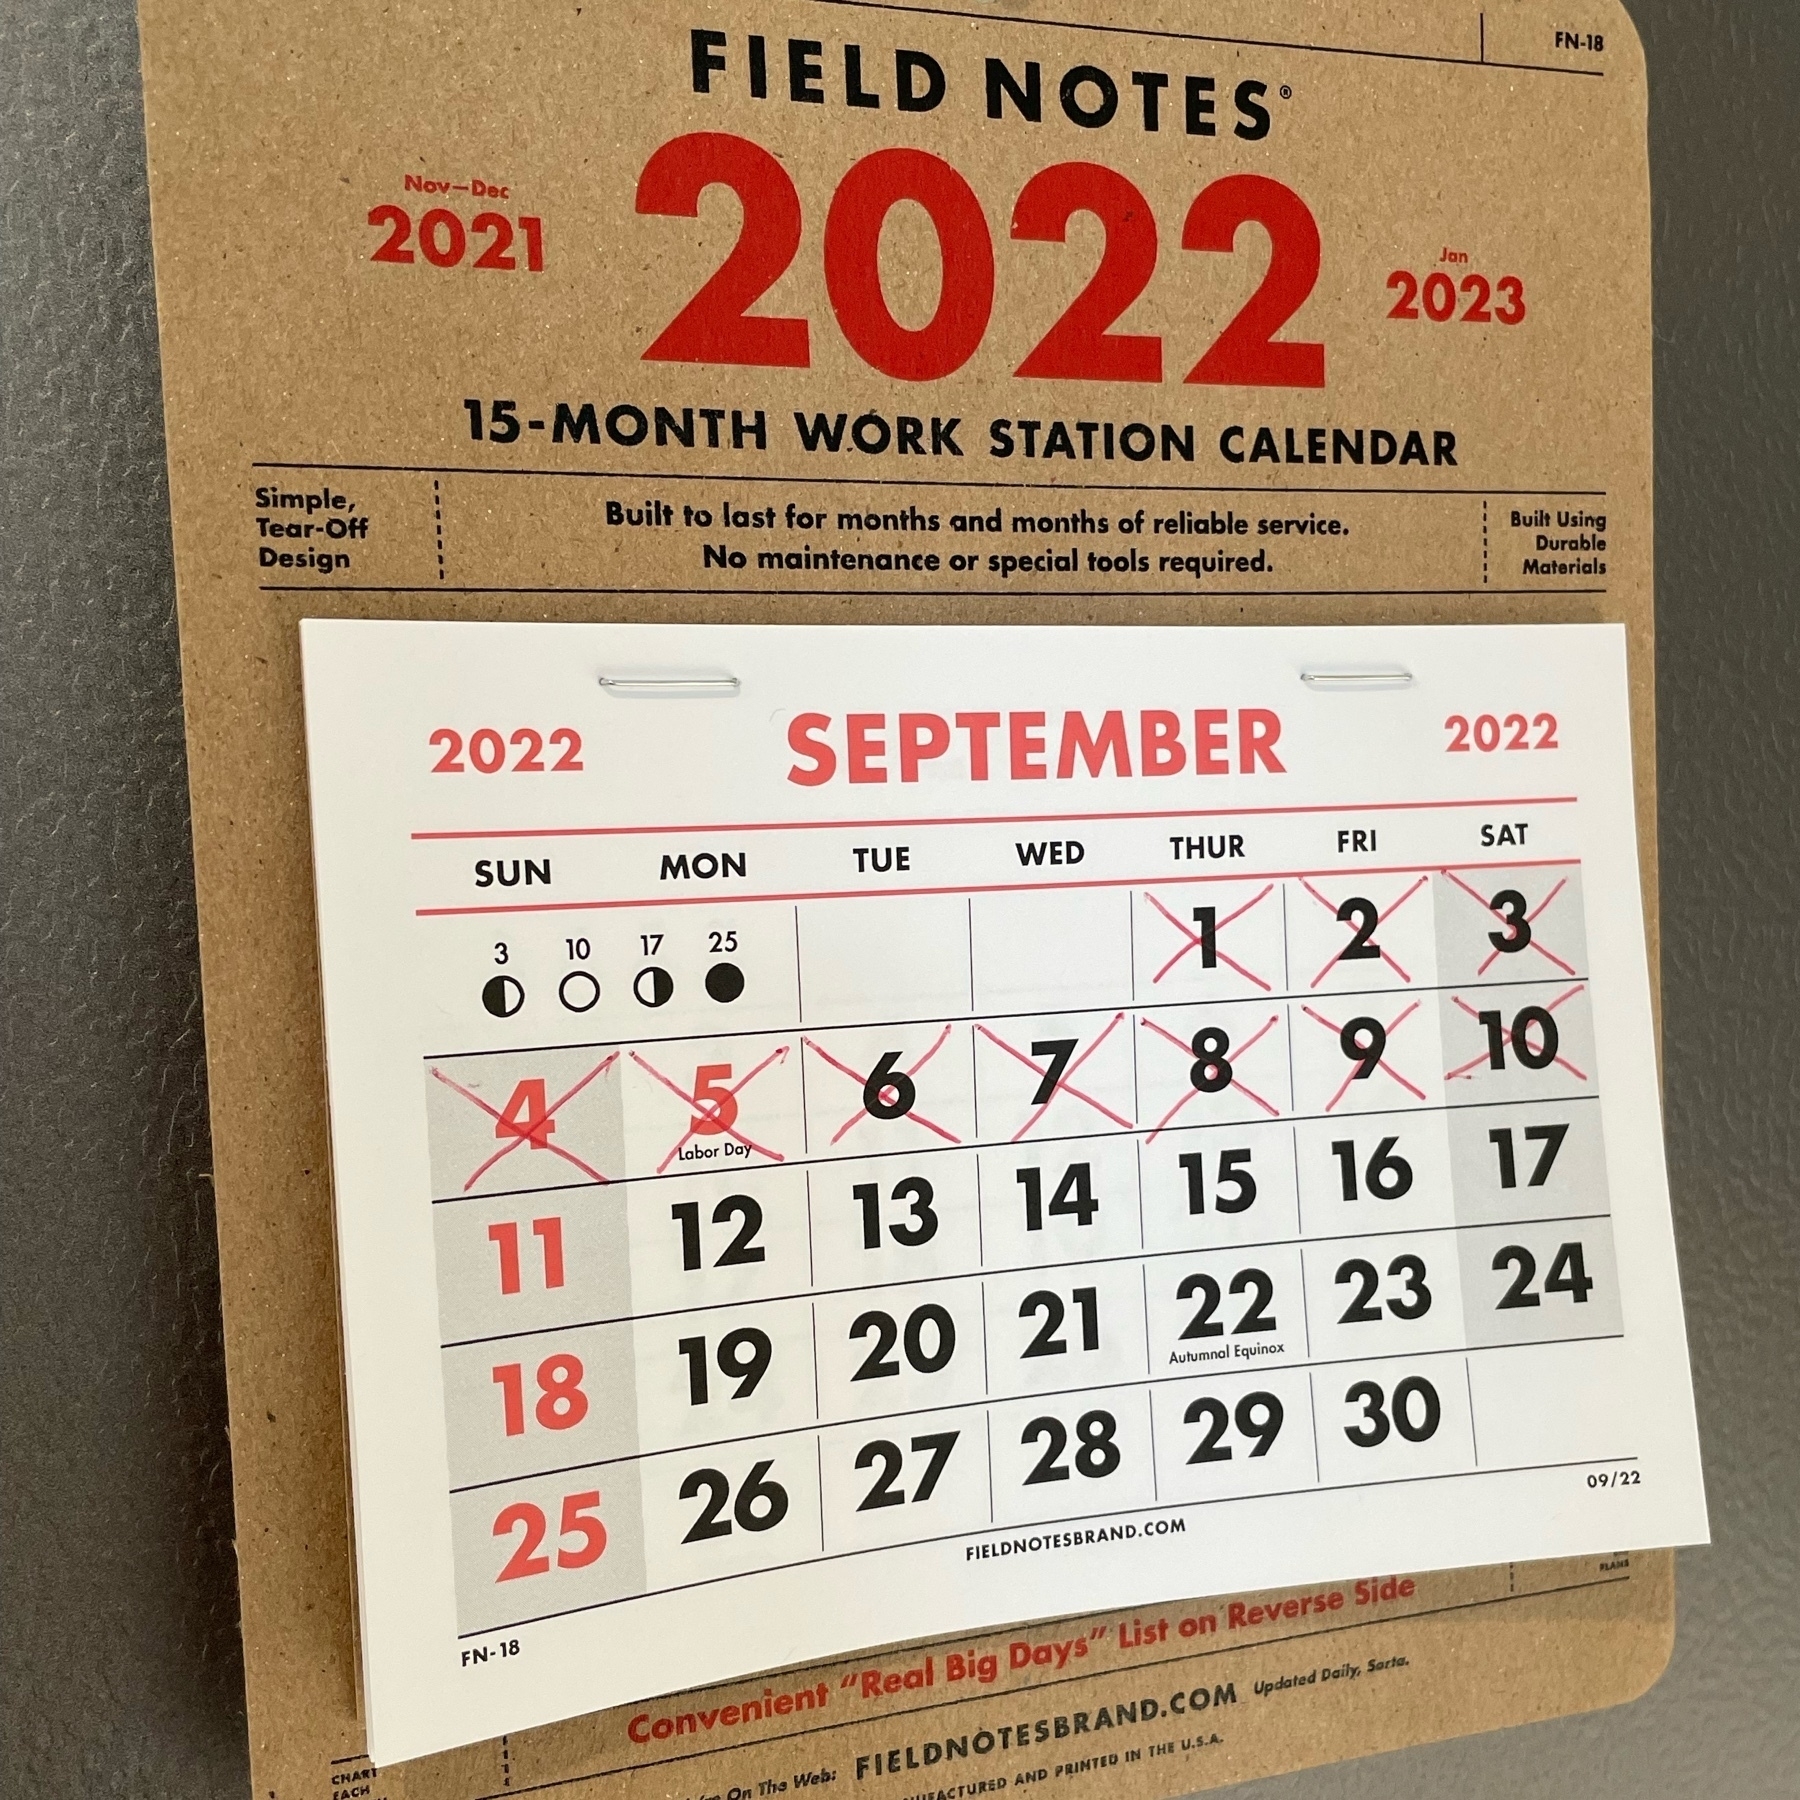 Field Notes calendar